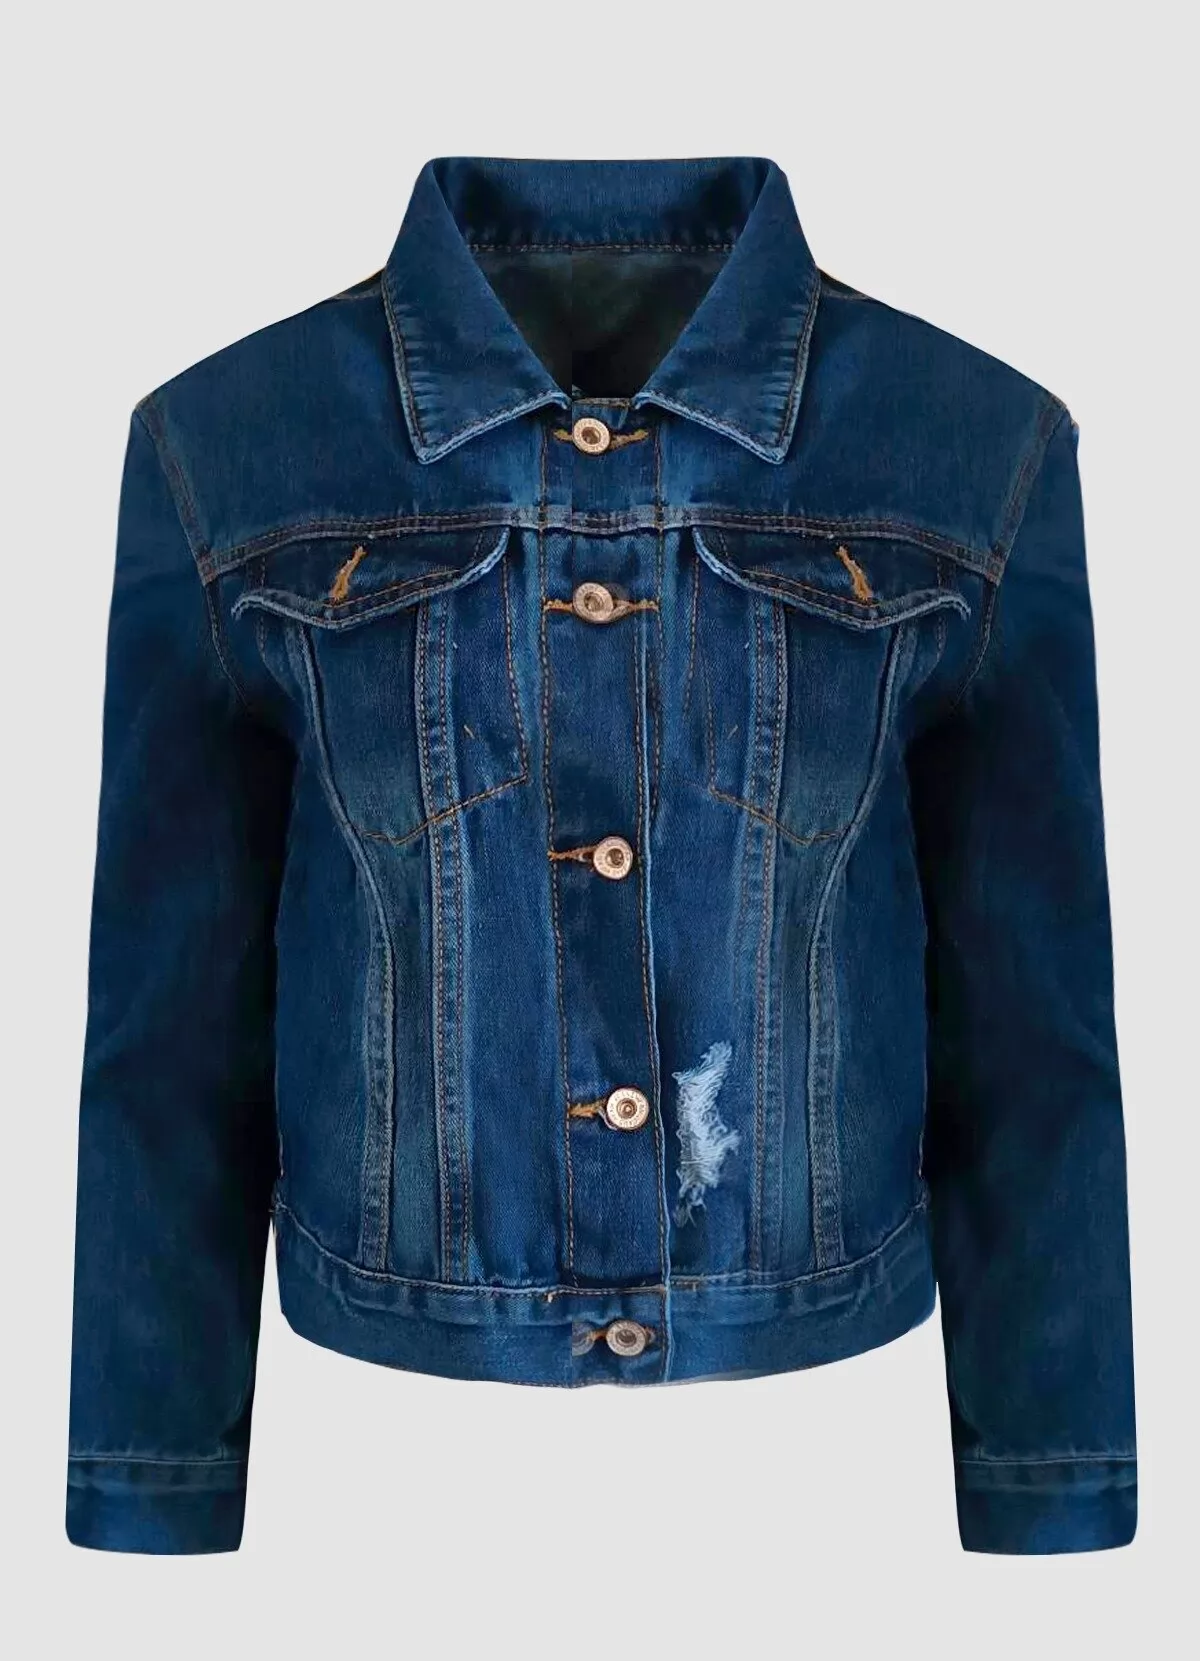 jean jacket με ιδιαίτερο σχέδιο στην πλάτη - Parizianista.gr